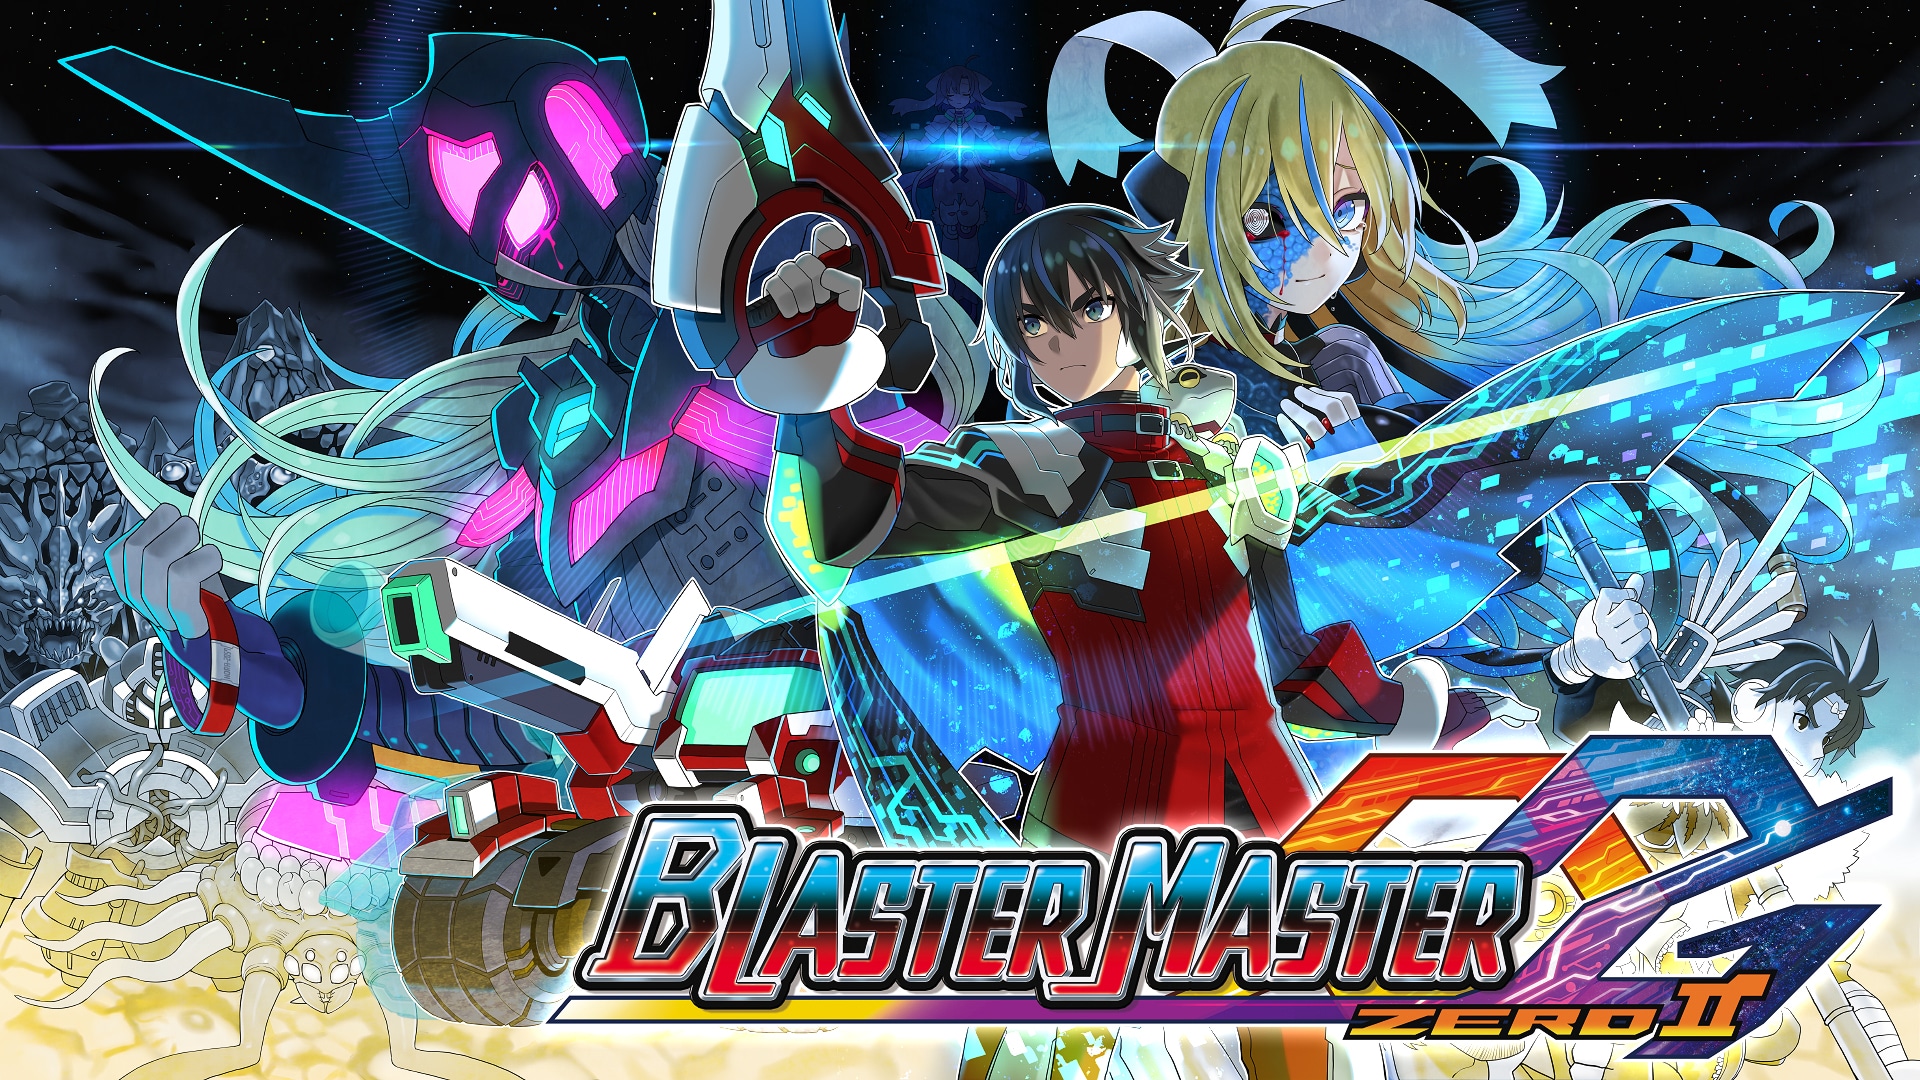 Blaster Master Zero 2 ya está disponible en la eShop